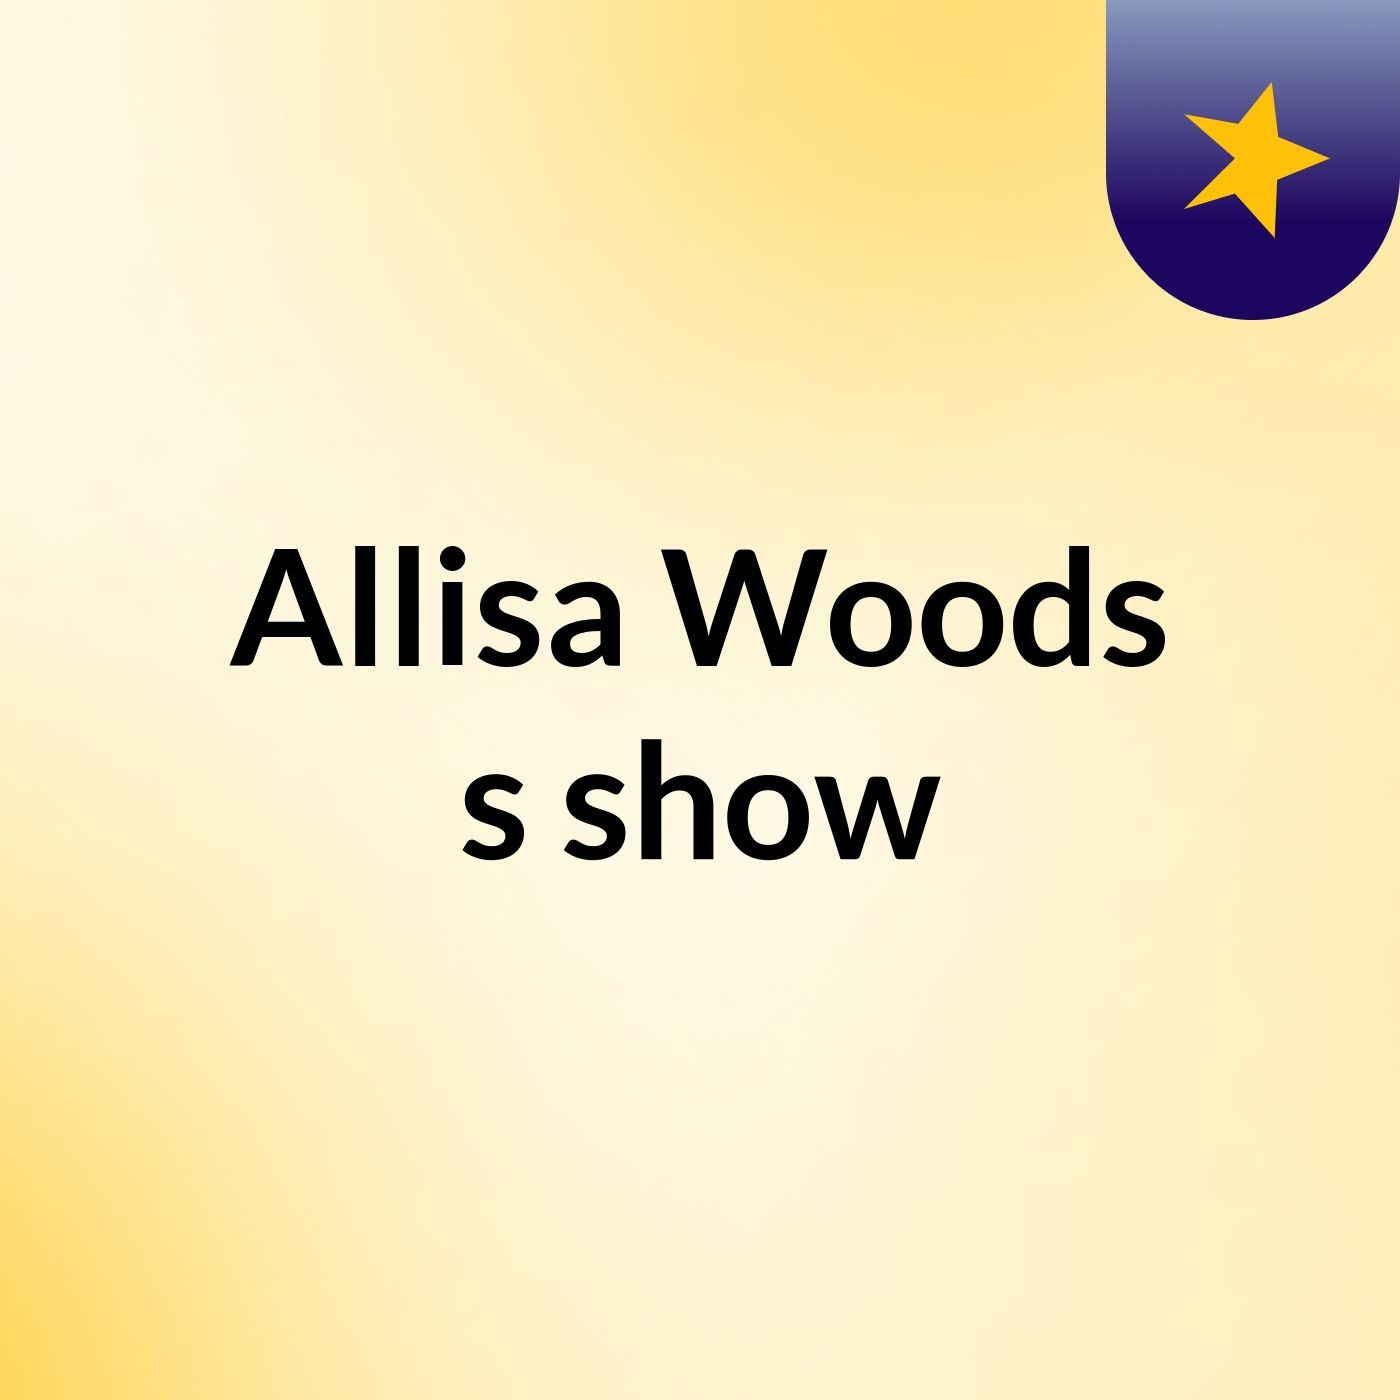 Allisa Woods's show